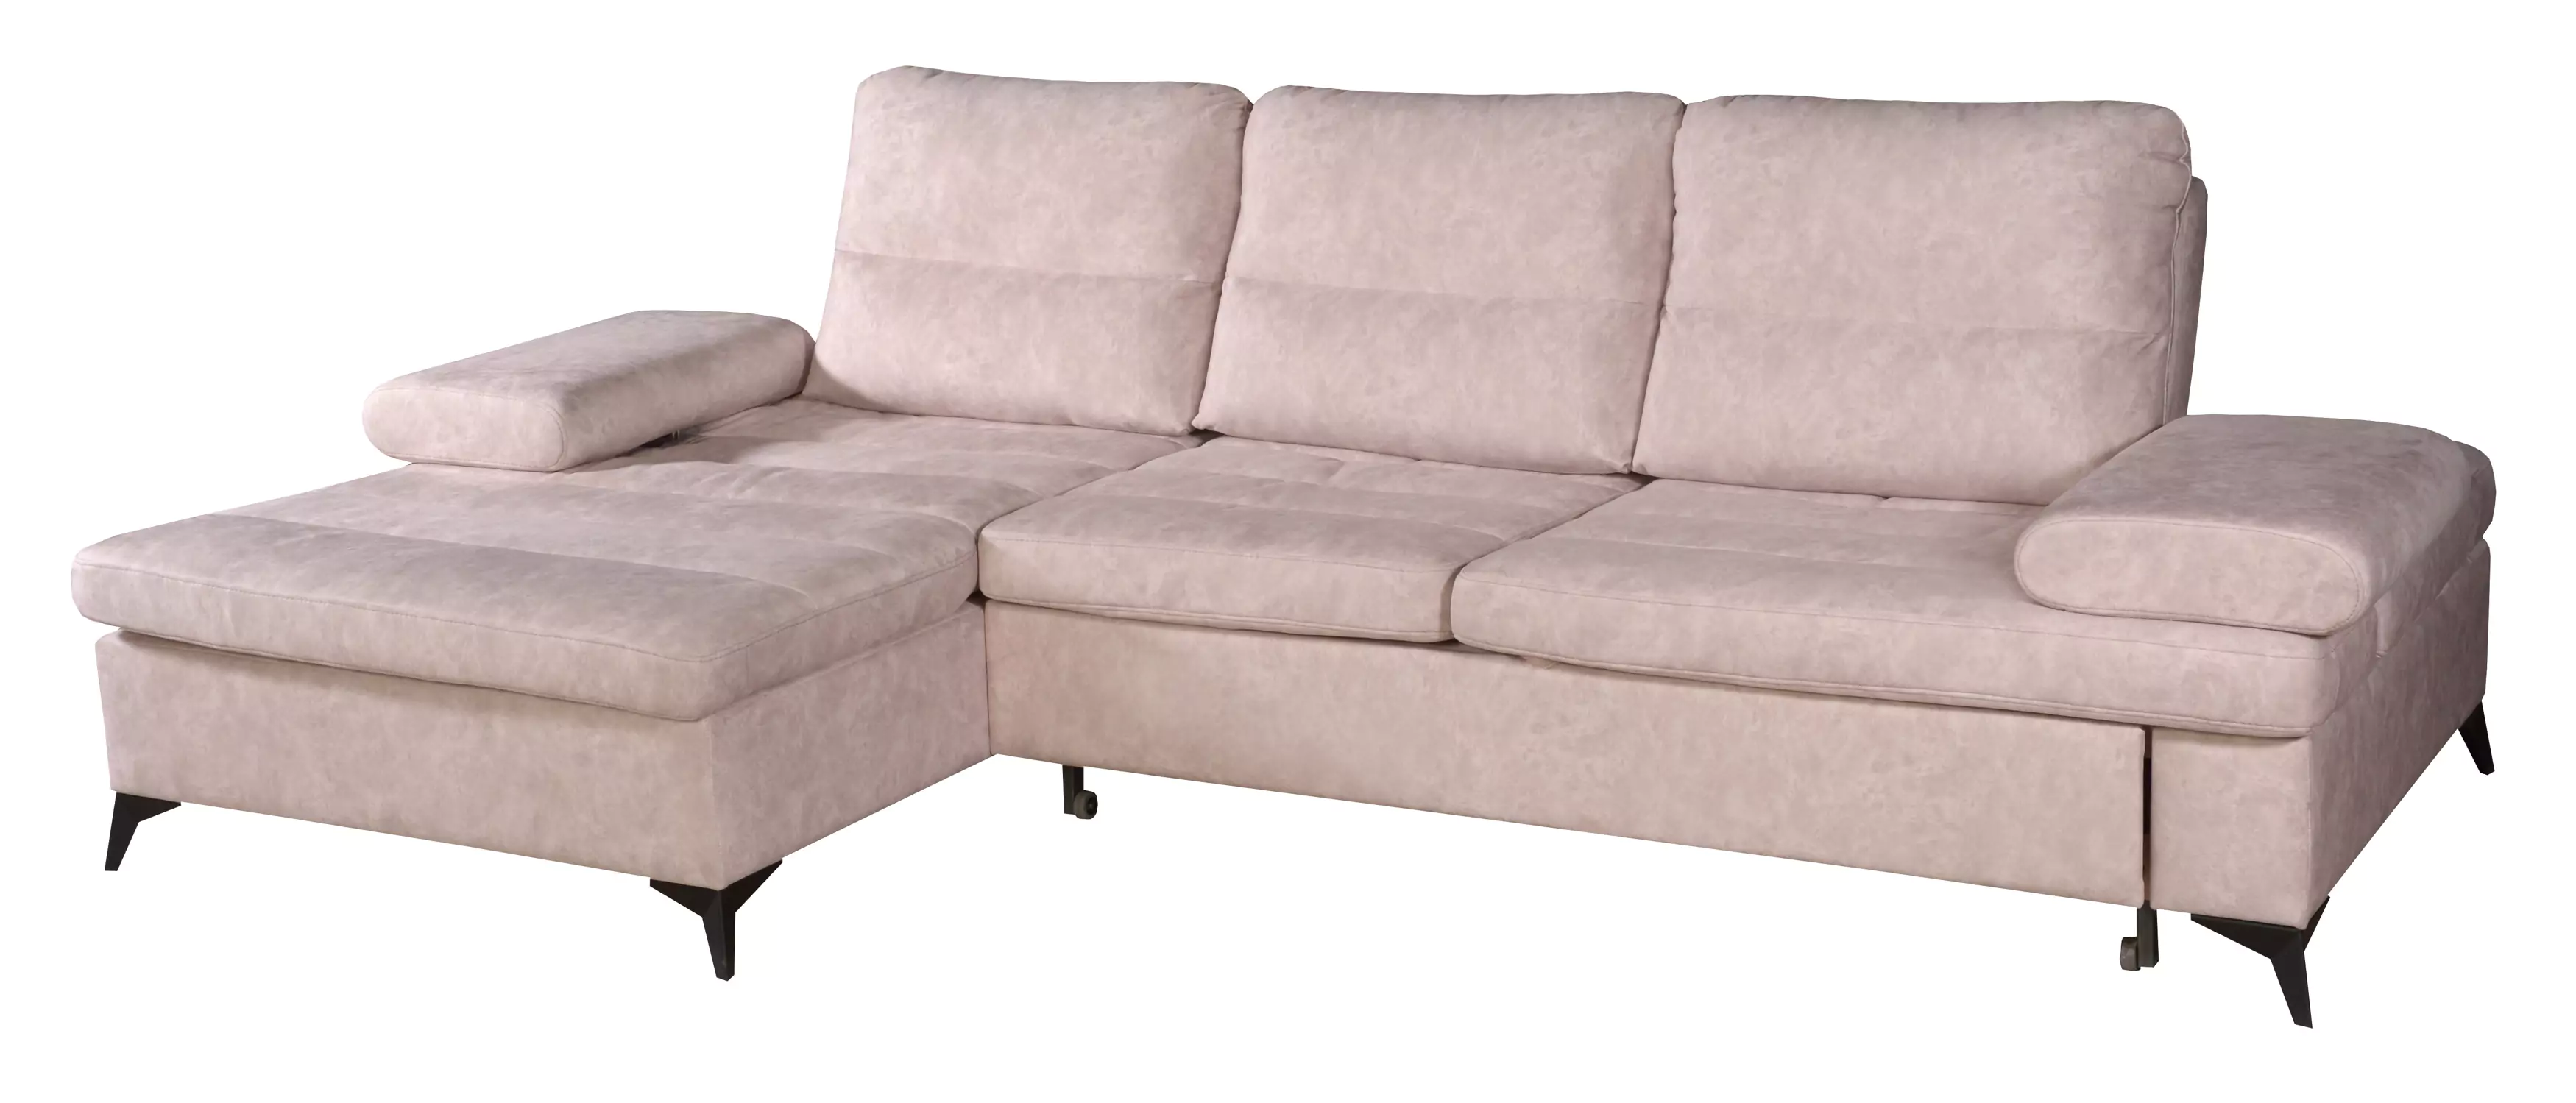 Угловой диван "Орион-2". Угловой диван без подушек.